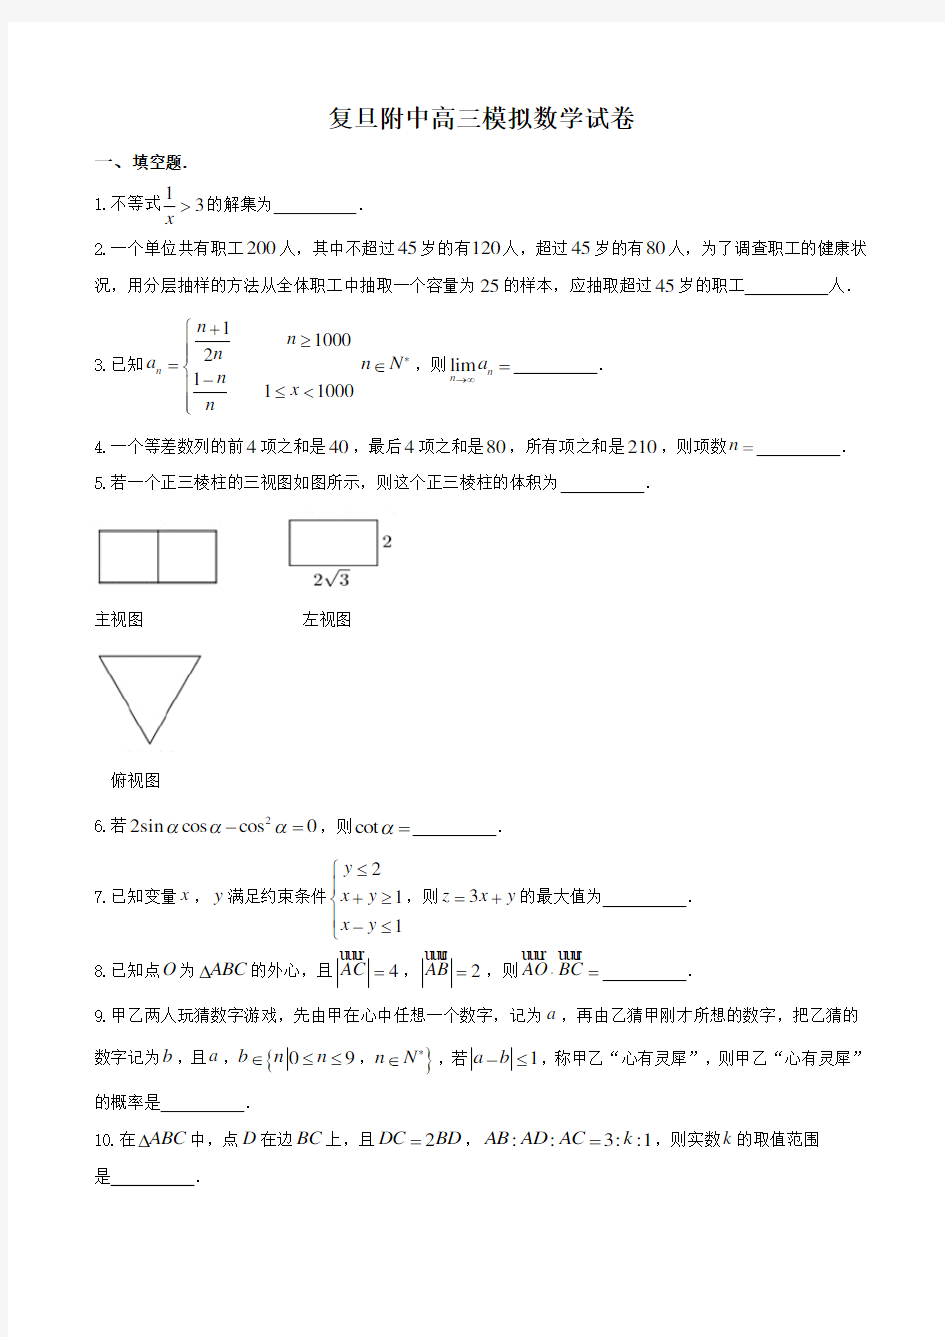 上海市复旦大学附属中学2019届高三高考模拟数学试题